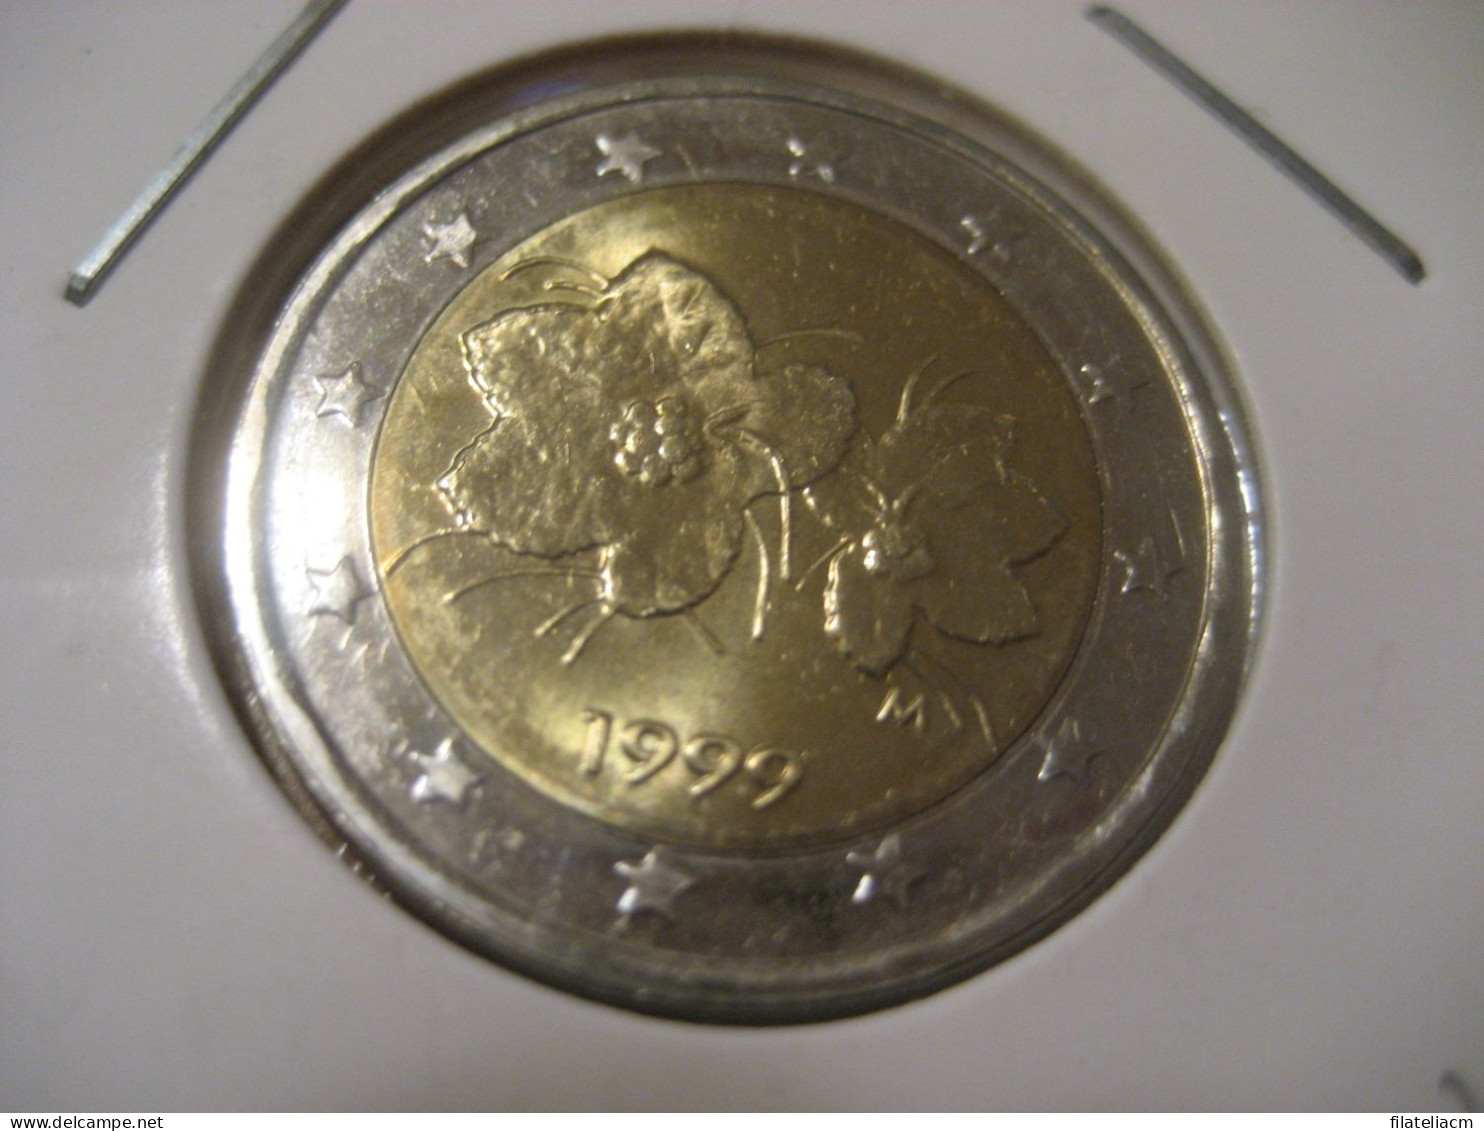 2 EURO 1999 Very Good Condition Eur Euros Coin FINLAND Finlande Finlandia - Finland